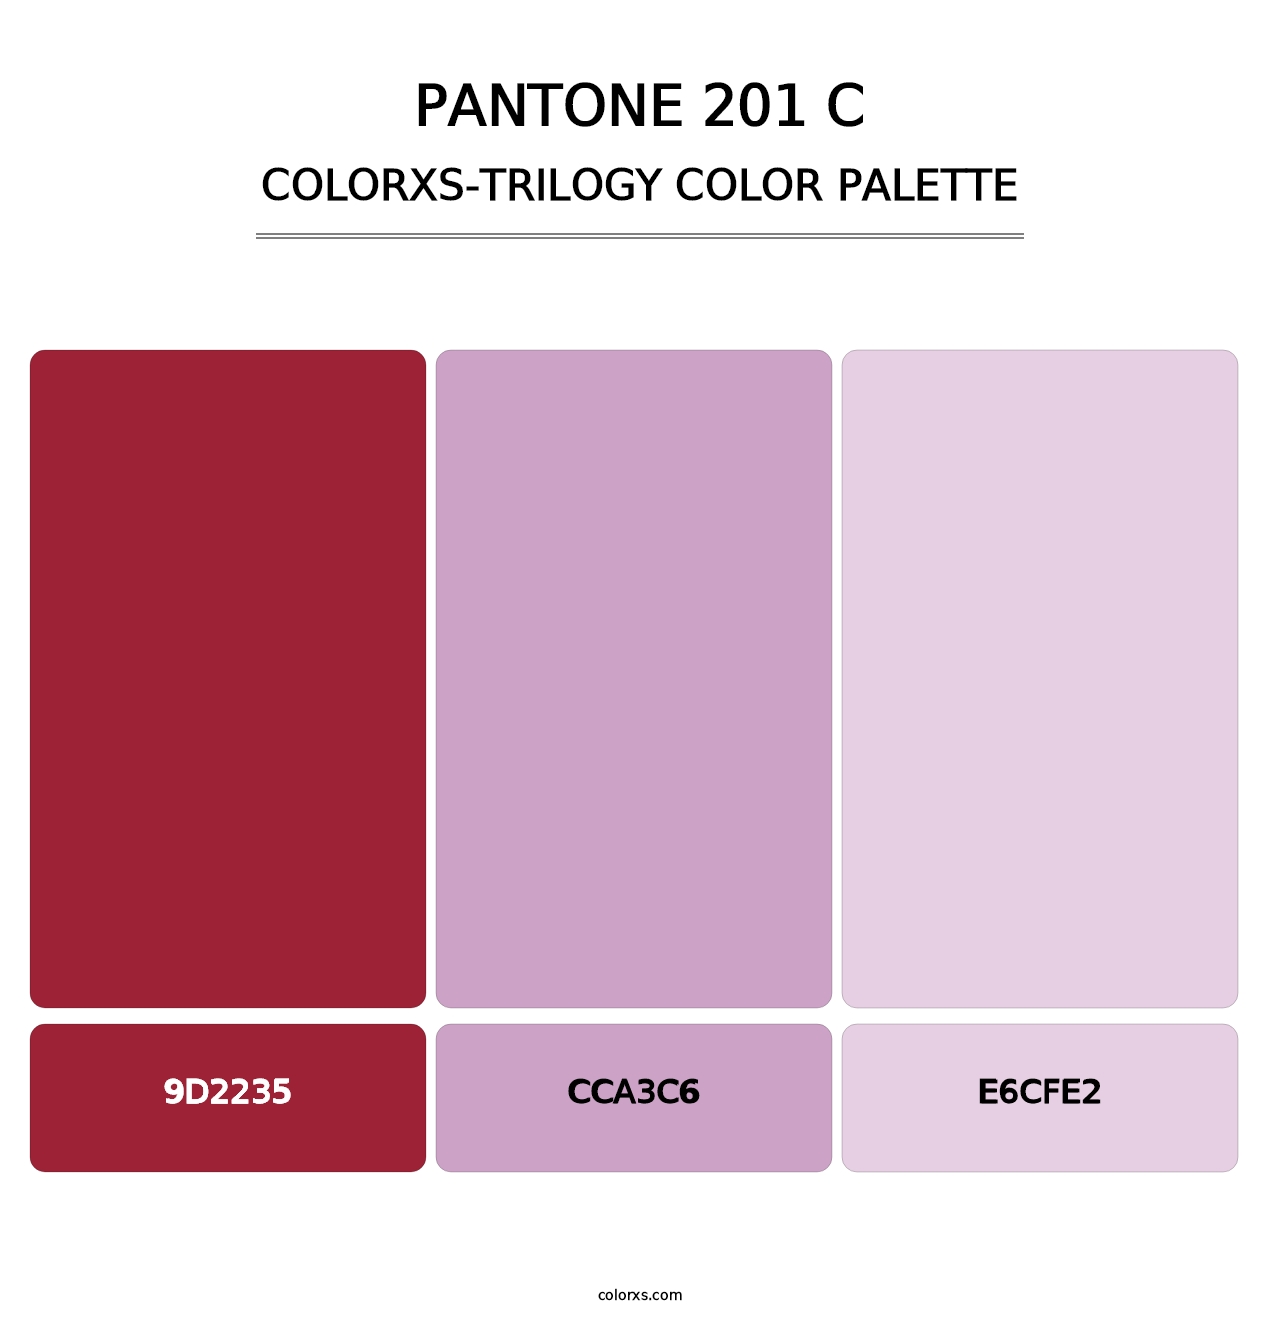 PANTONE 201 C - Colorxs Trilogy Palette